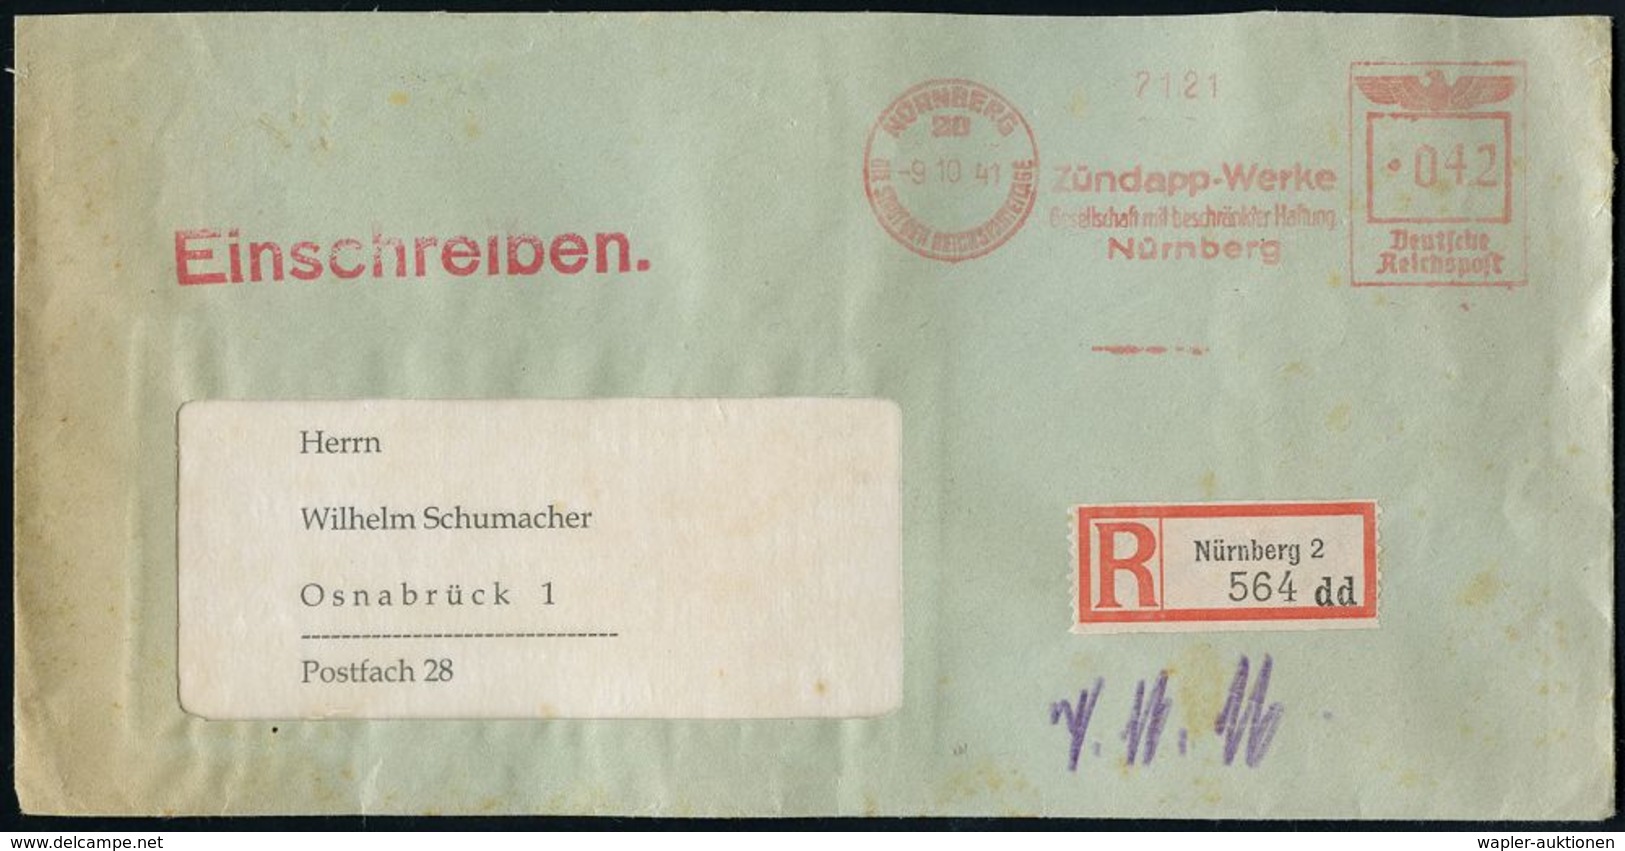 MOTORRAD & ZUBEHÖR : NÜRNBERG/ 20/ DSDR/ Zündapp-Werke/ GmbH 1941 (9.10.) AFS 042 Pf. + Selbstbucher-RZ: Nürnberg 2/ D D - Motos